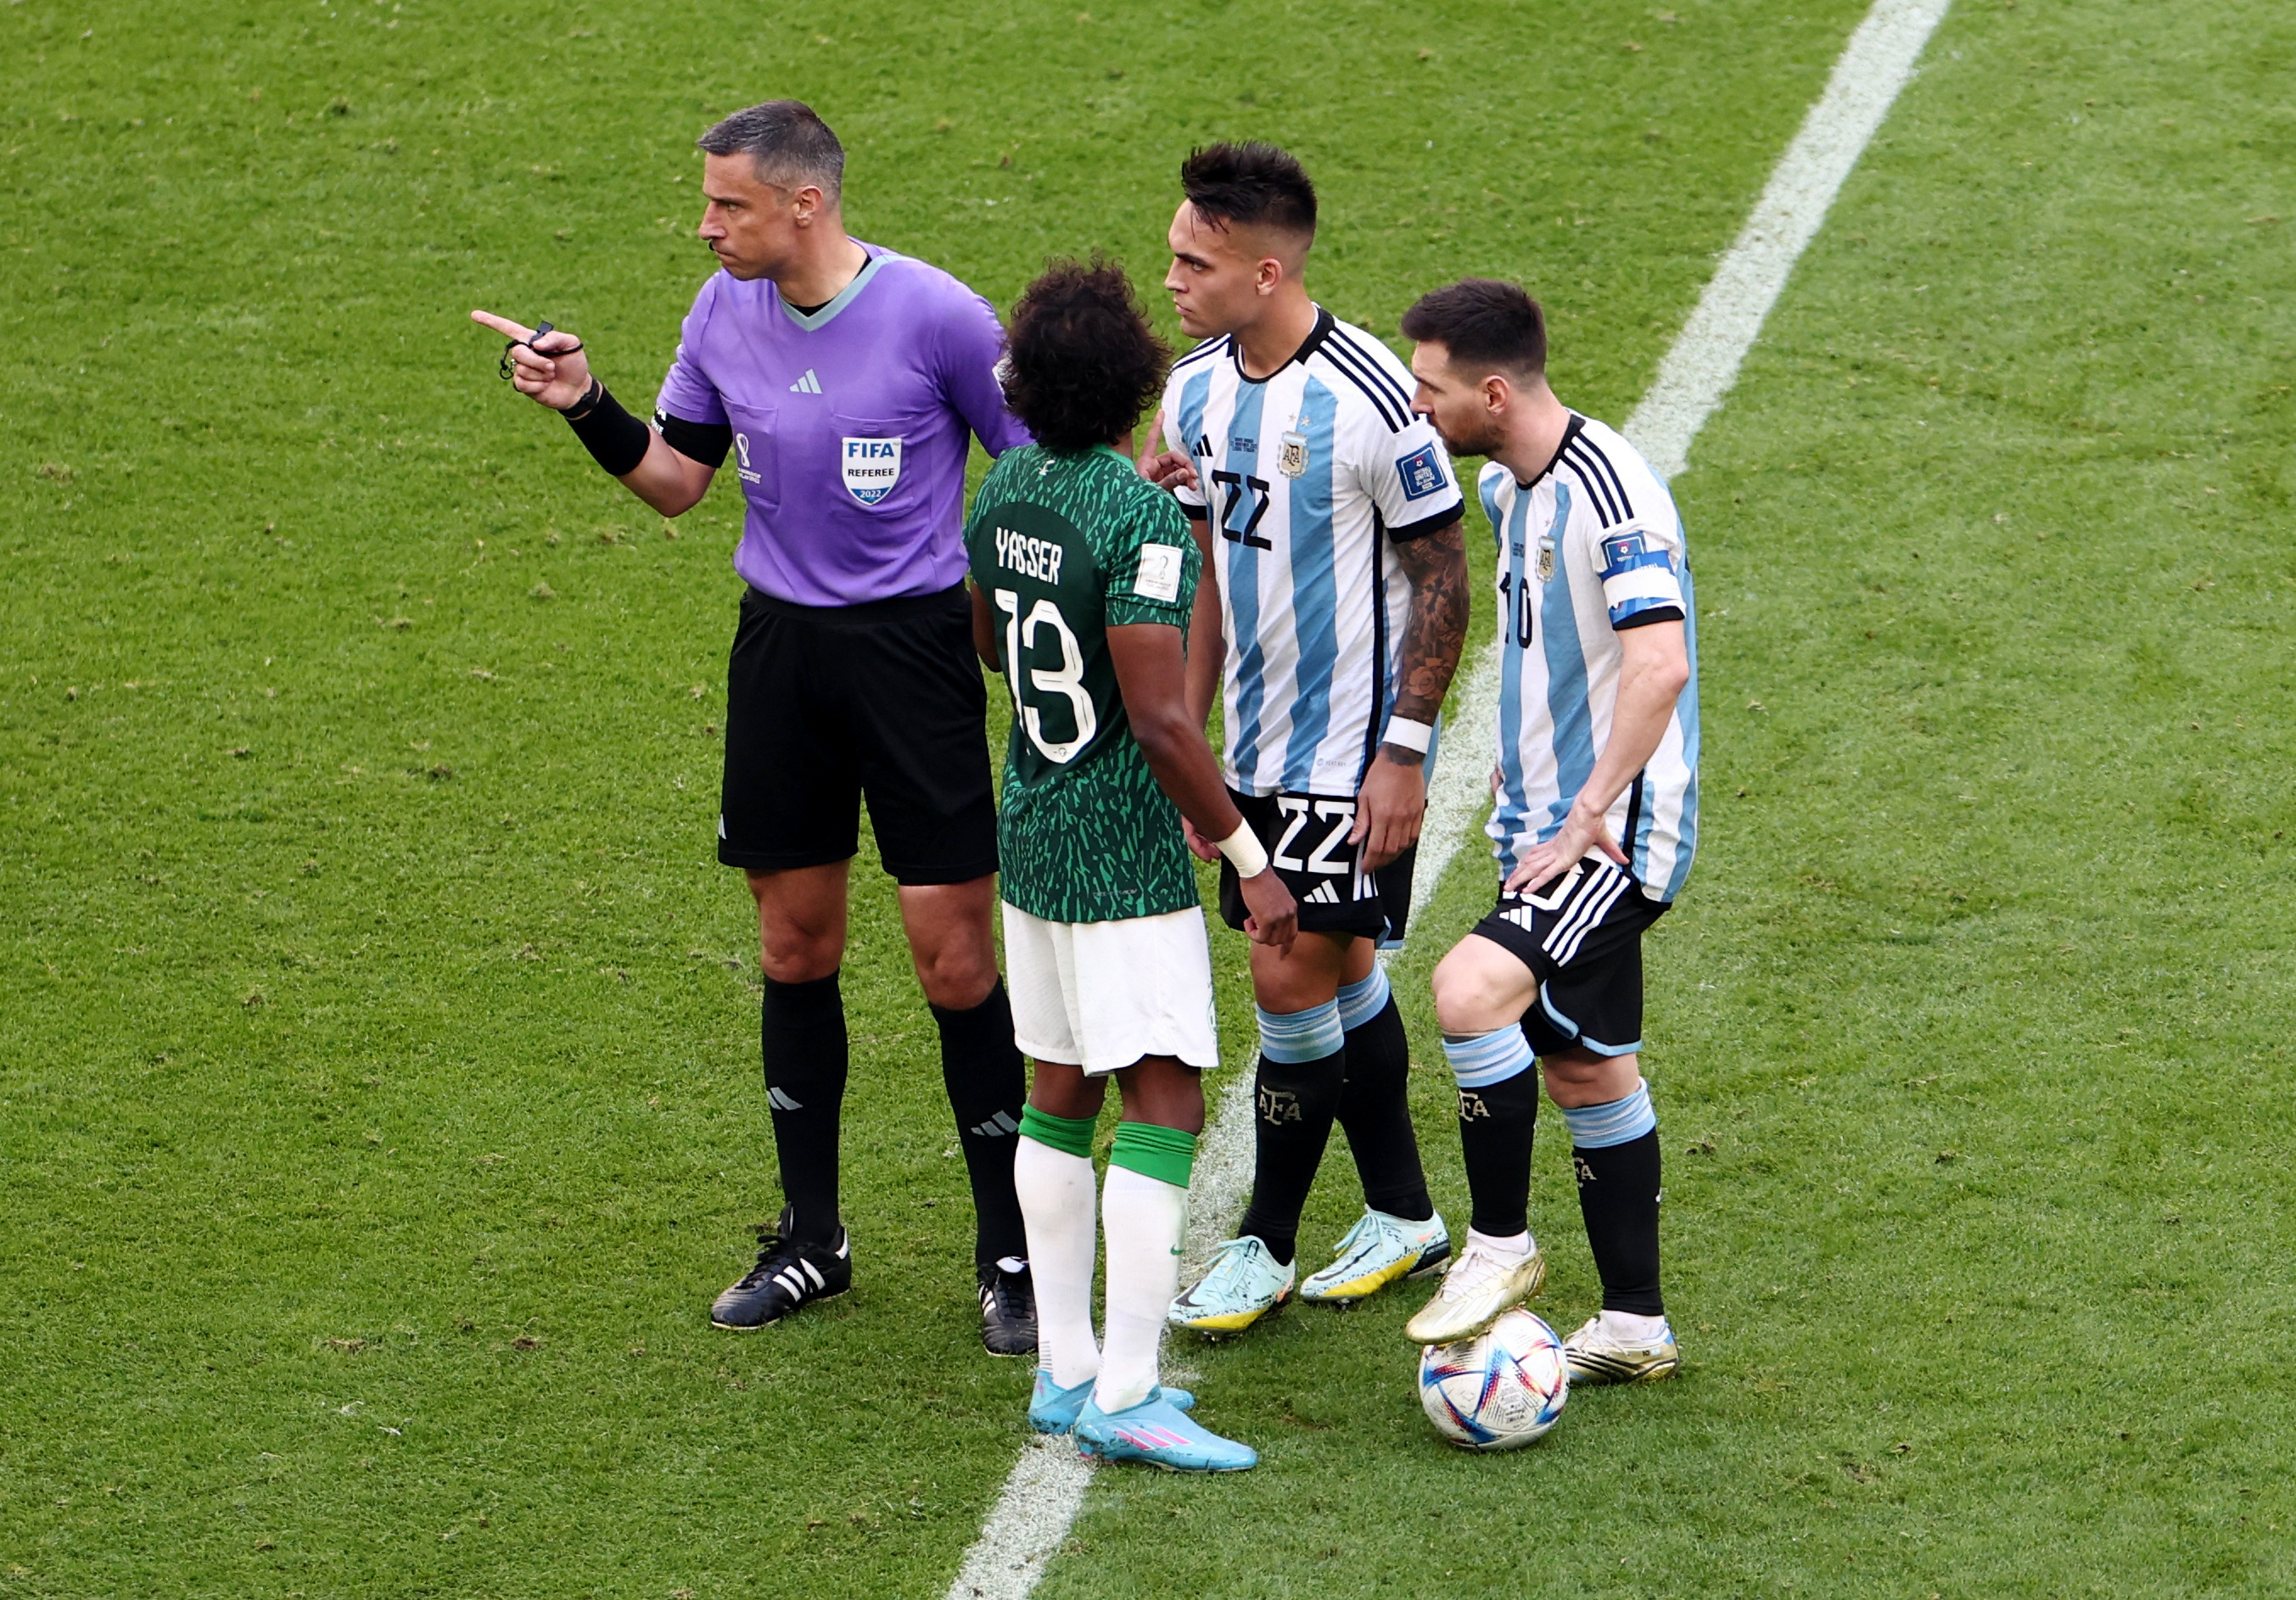 Laurato Martínez y Alejandro "Papu" Gómez intercedieron y arremetieron contra el futbolista árabe, que además fue advertido por el árbitro (REUTERS/Marko Djurica)